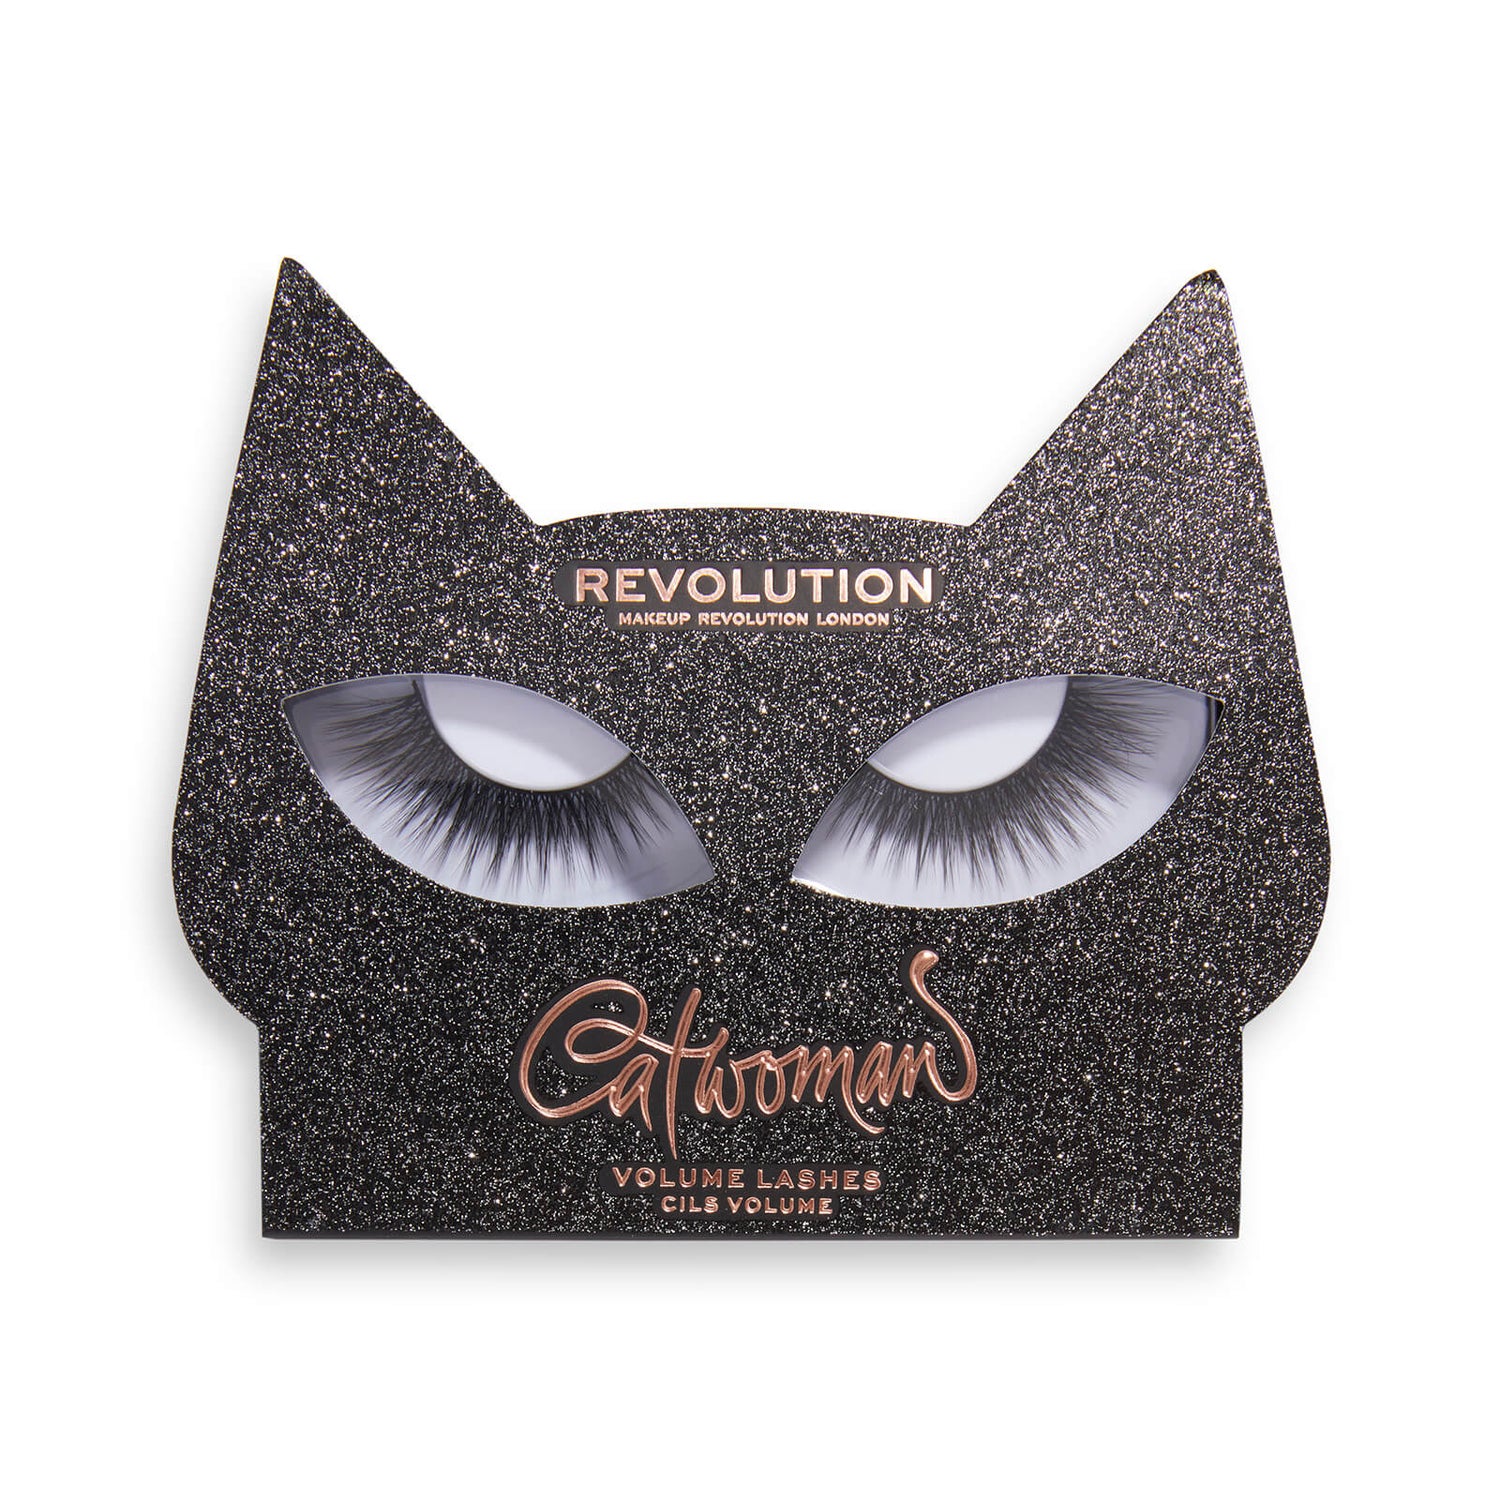 Makeup Revolution X Catwomen Lash